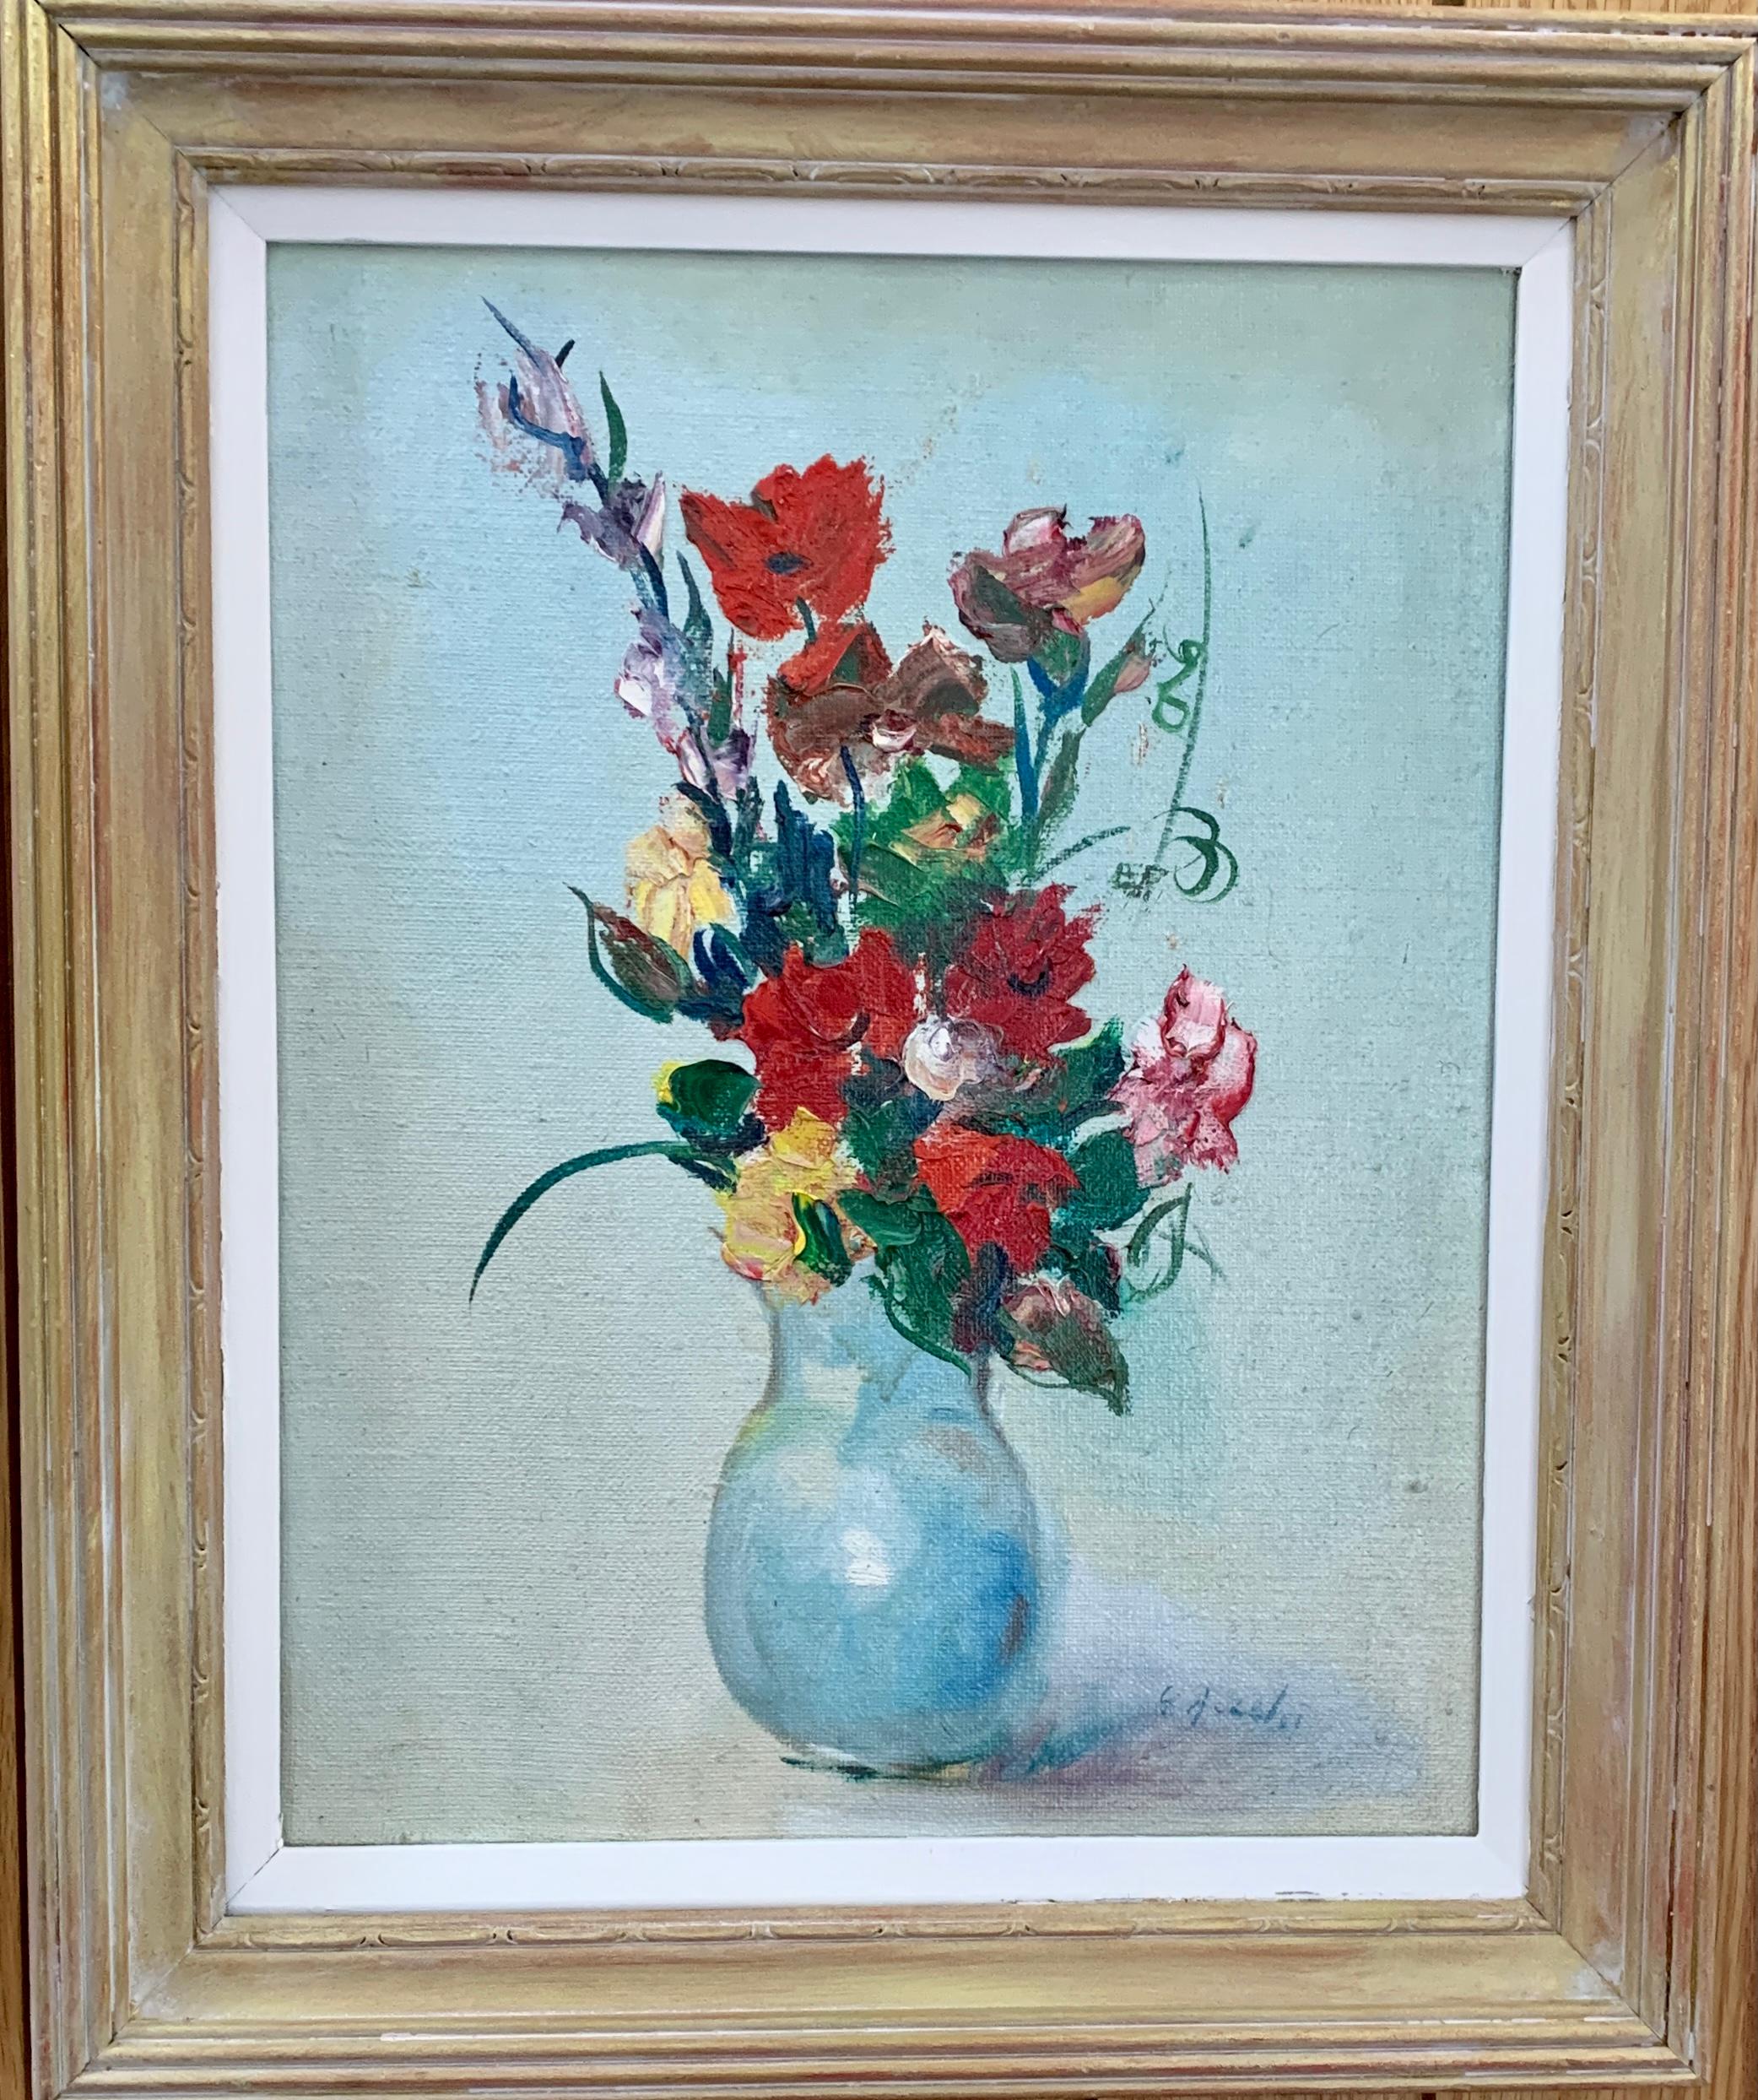 Figurative Painting George Aczel - Nature morte impressionniste du milieu du 20e siècle représentant des fleurs dans un vase, avec des coquelicots